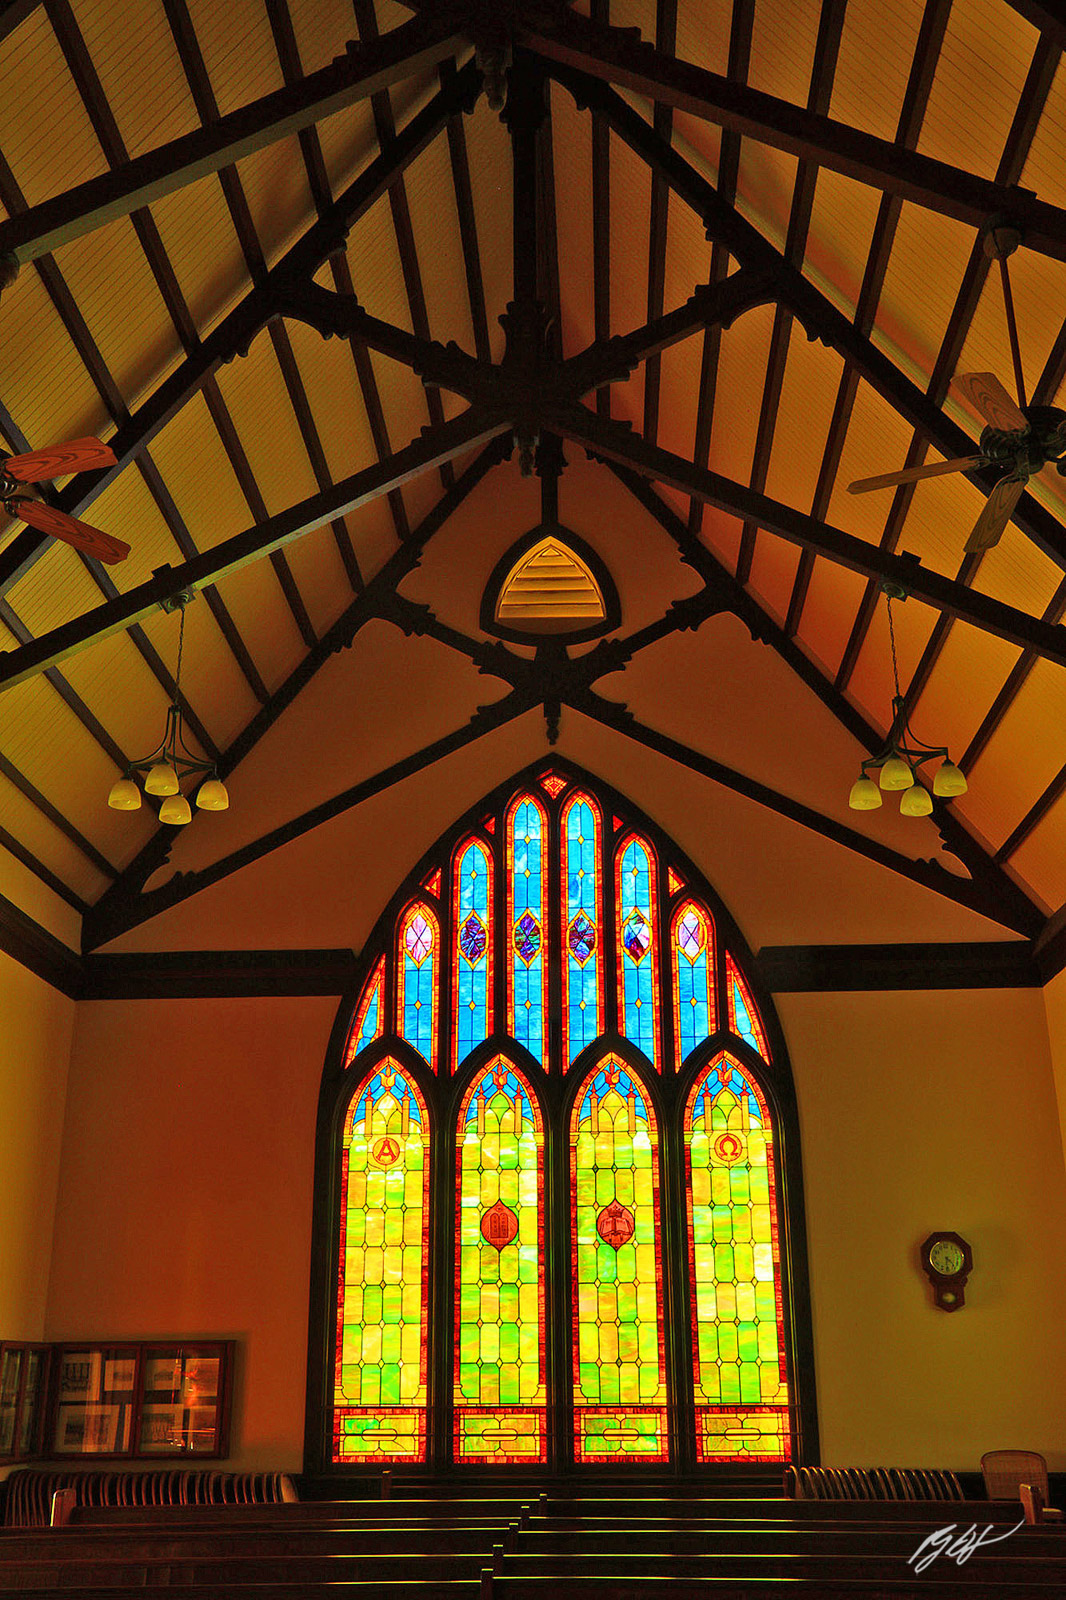 Stained Glass Window inside the Waiʻoli Huiʻia Church in Hanalei Kaui, Hawaii